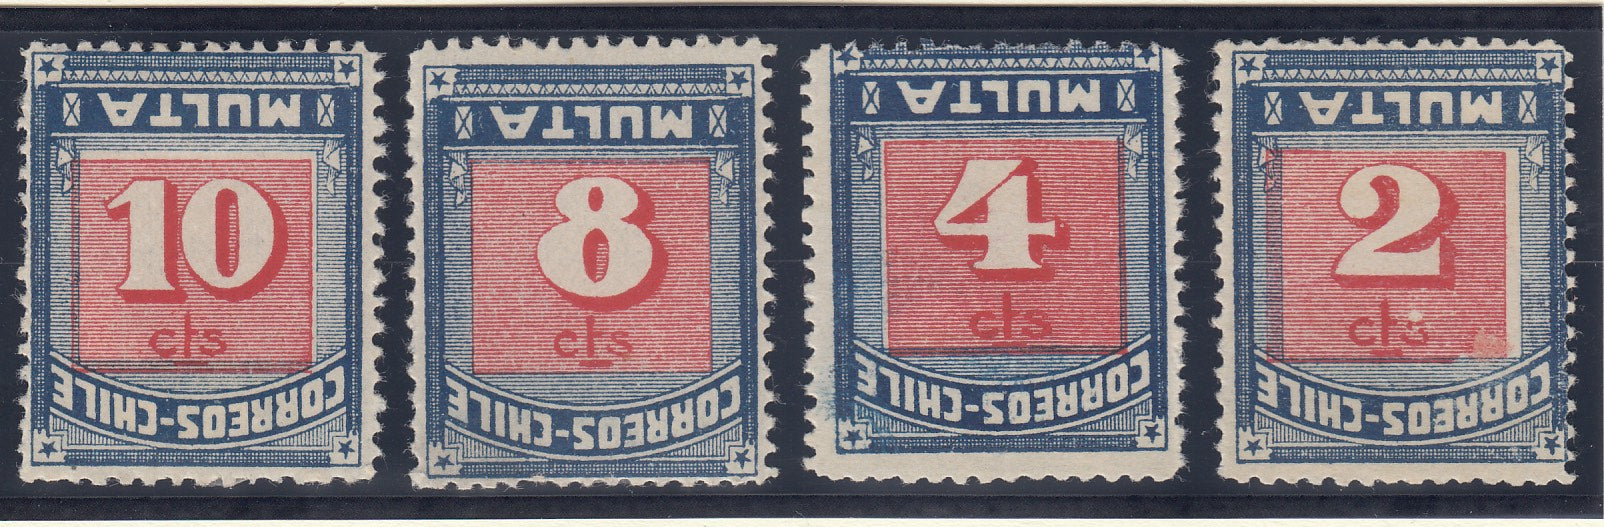 Chile 1924 Postage Due Complete Set Inverted. Scott J48-J58